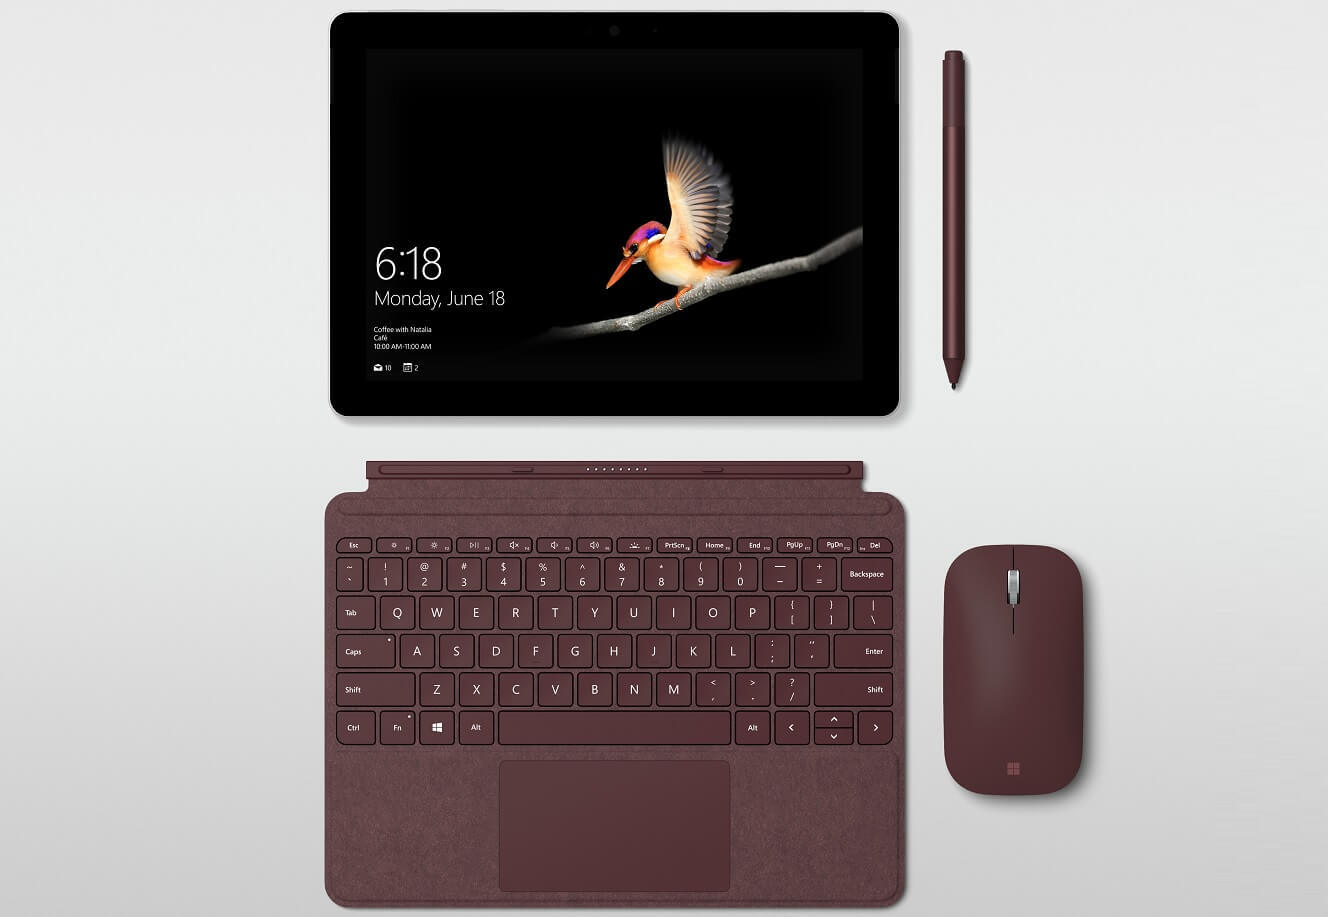 Microsoft Surface Go Intel Pentium 4415Y 1.60GHz 8GB RAM 128GB eMMC 10" + Keyboard NO OS Image 1